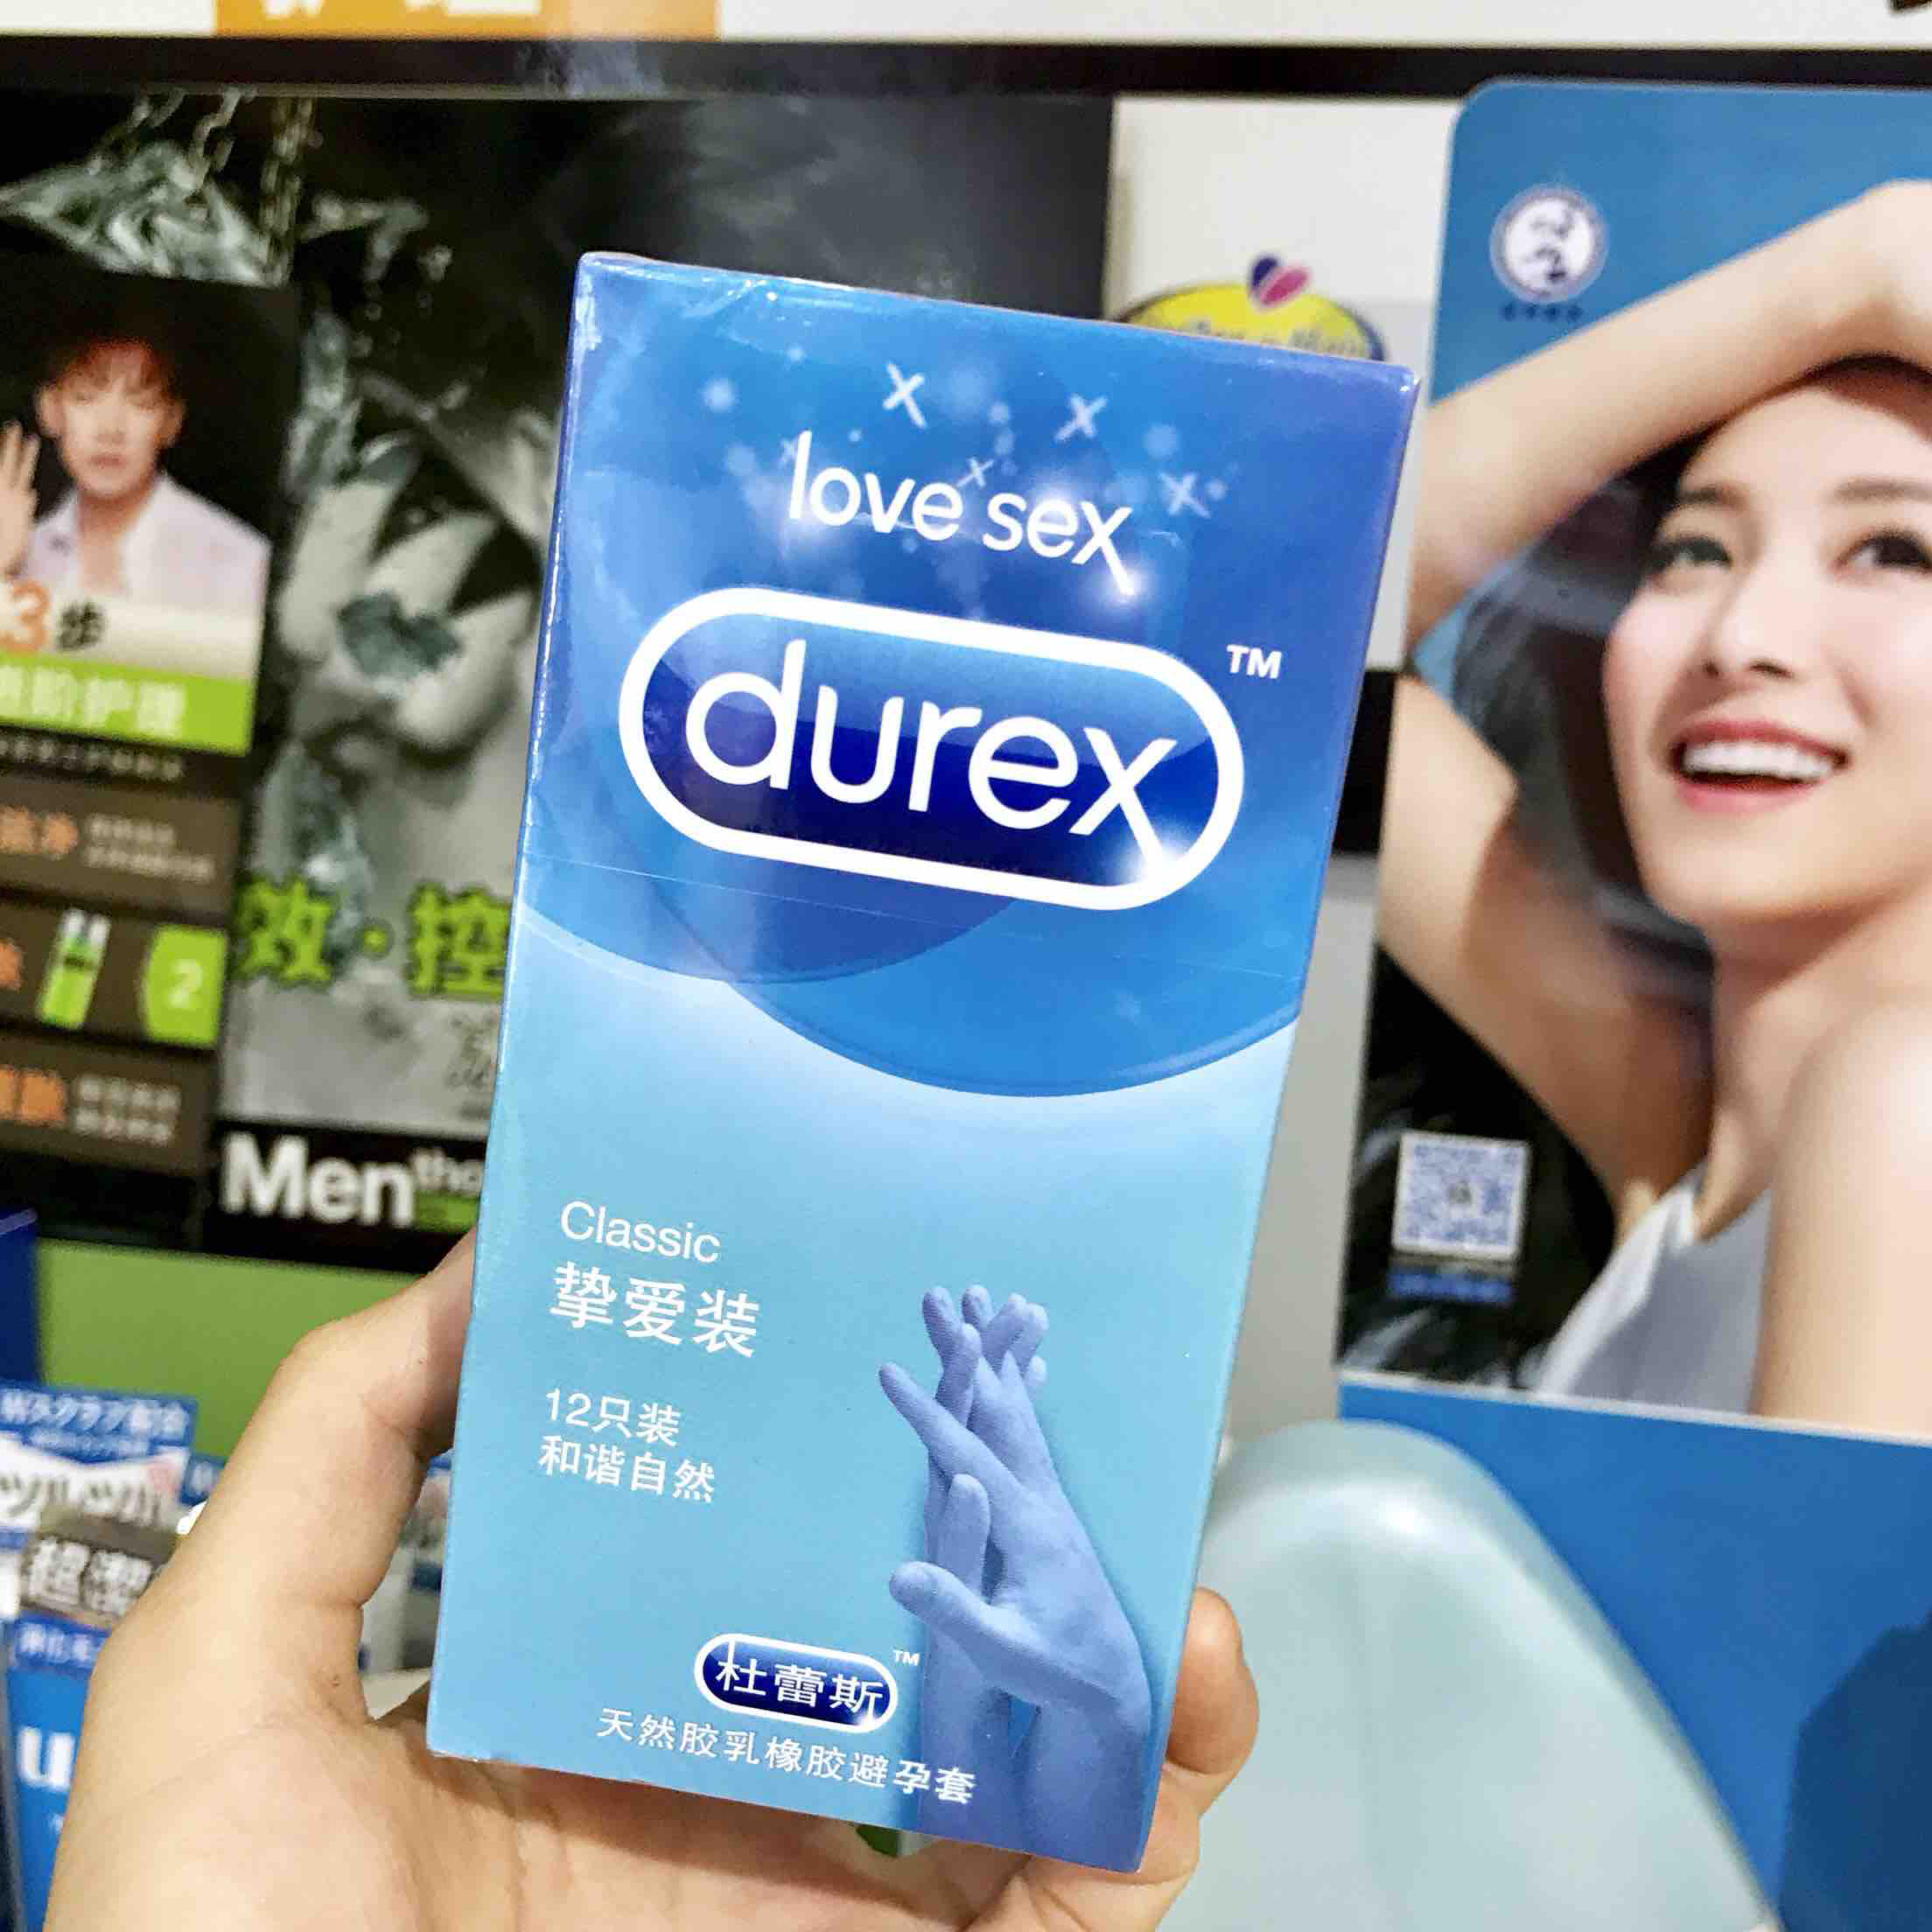 【520勇敢爱】durex杜蕾斯 挚爱装12只天然橡胶避孕套